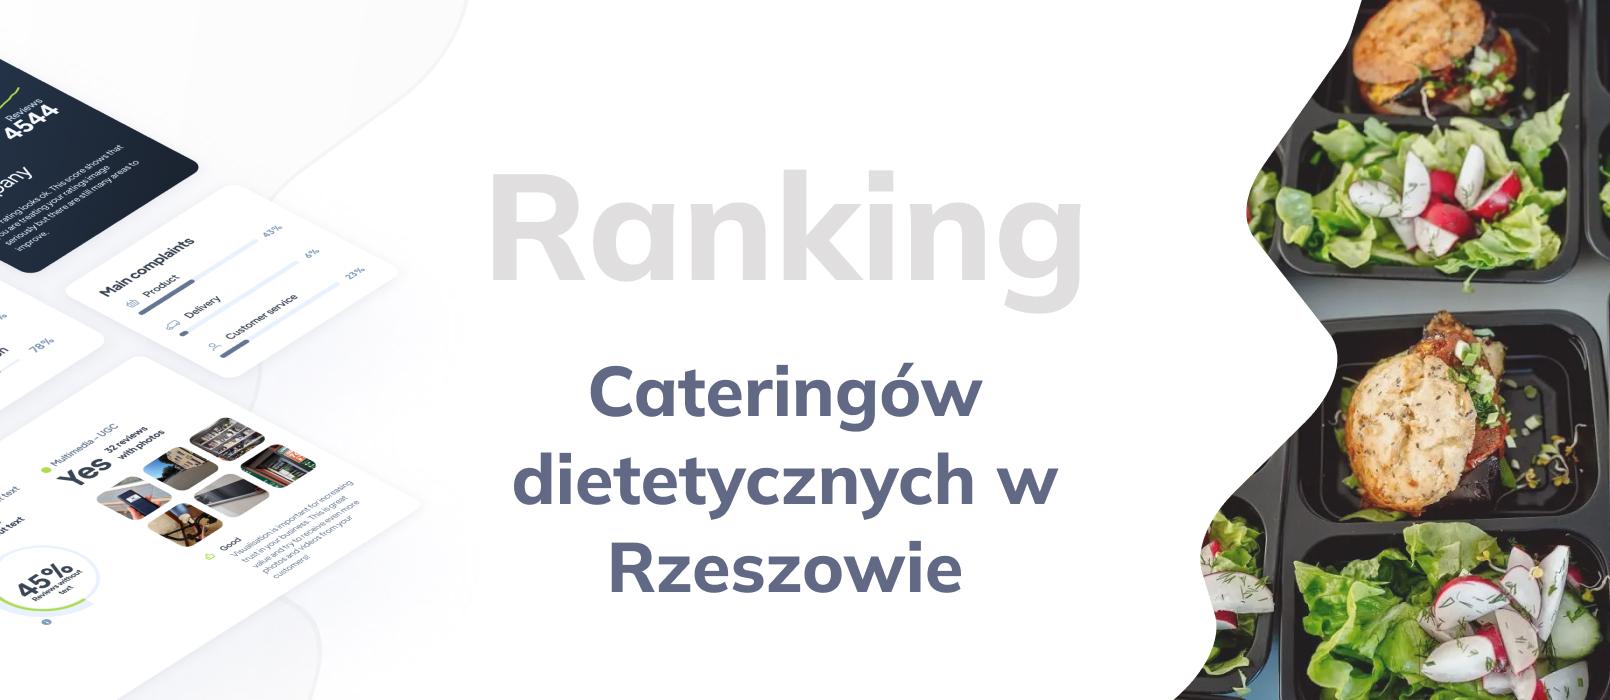 Cateringi dietetyczne w Rzeszowie - ranking TOP 10